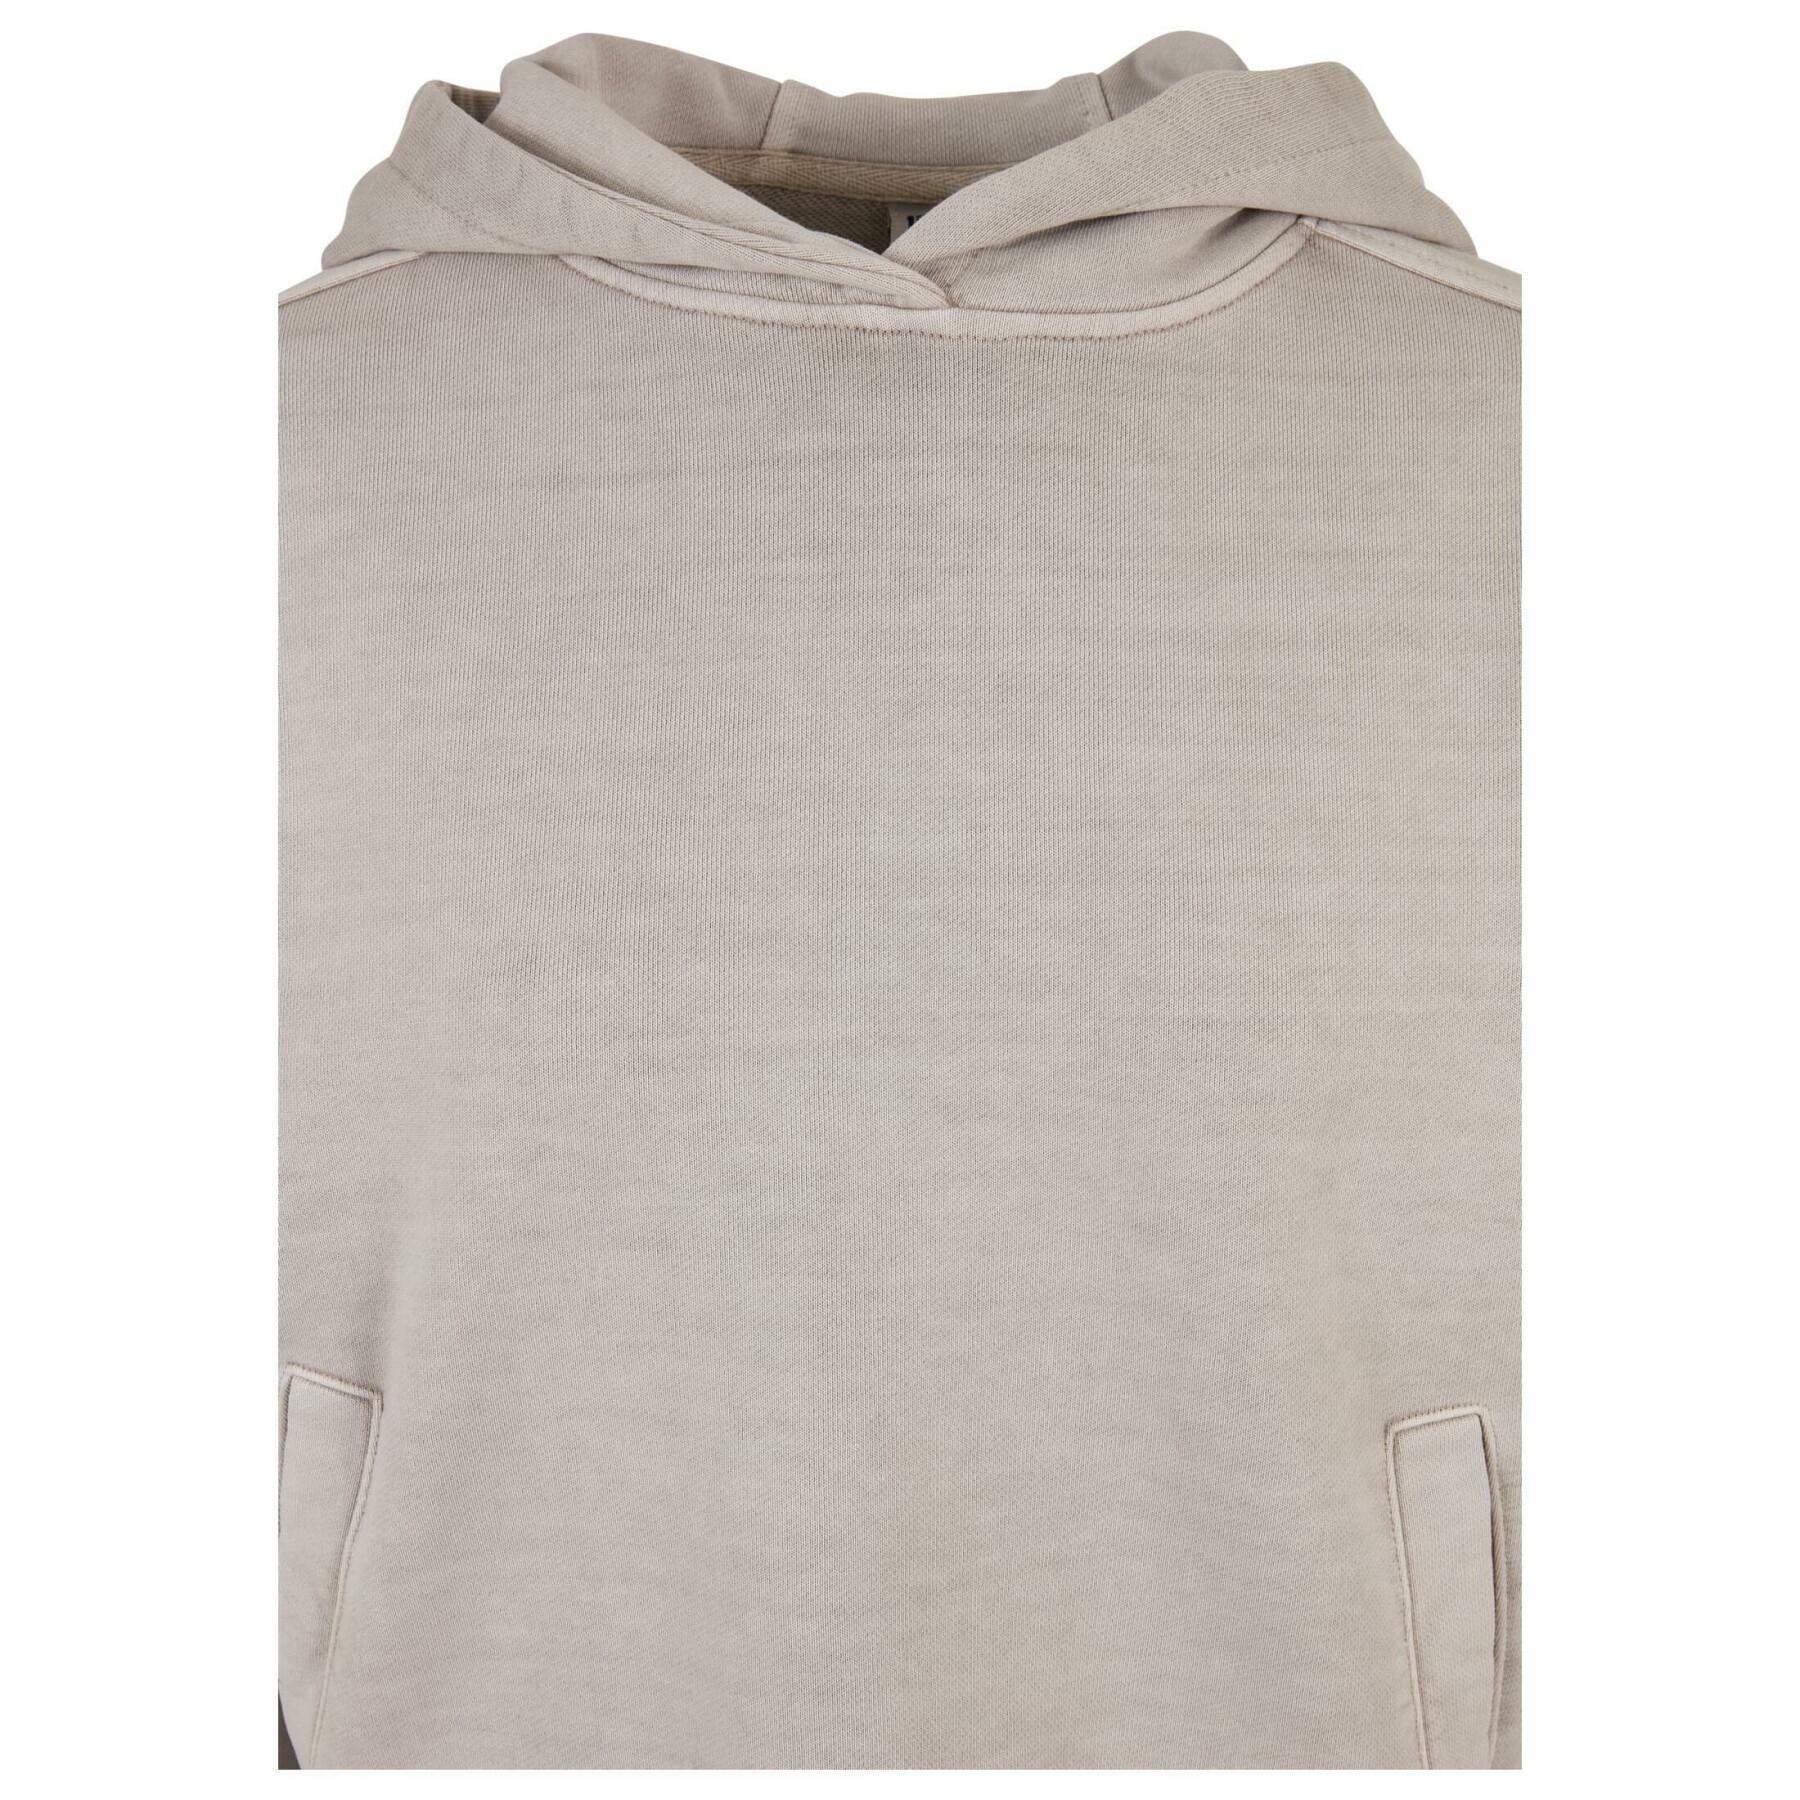 Women's hooded sweatshirt Urban Classics Heavy Terry Garment Dye GT